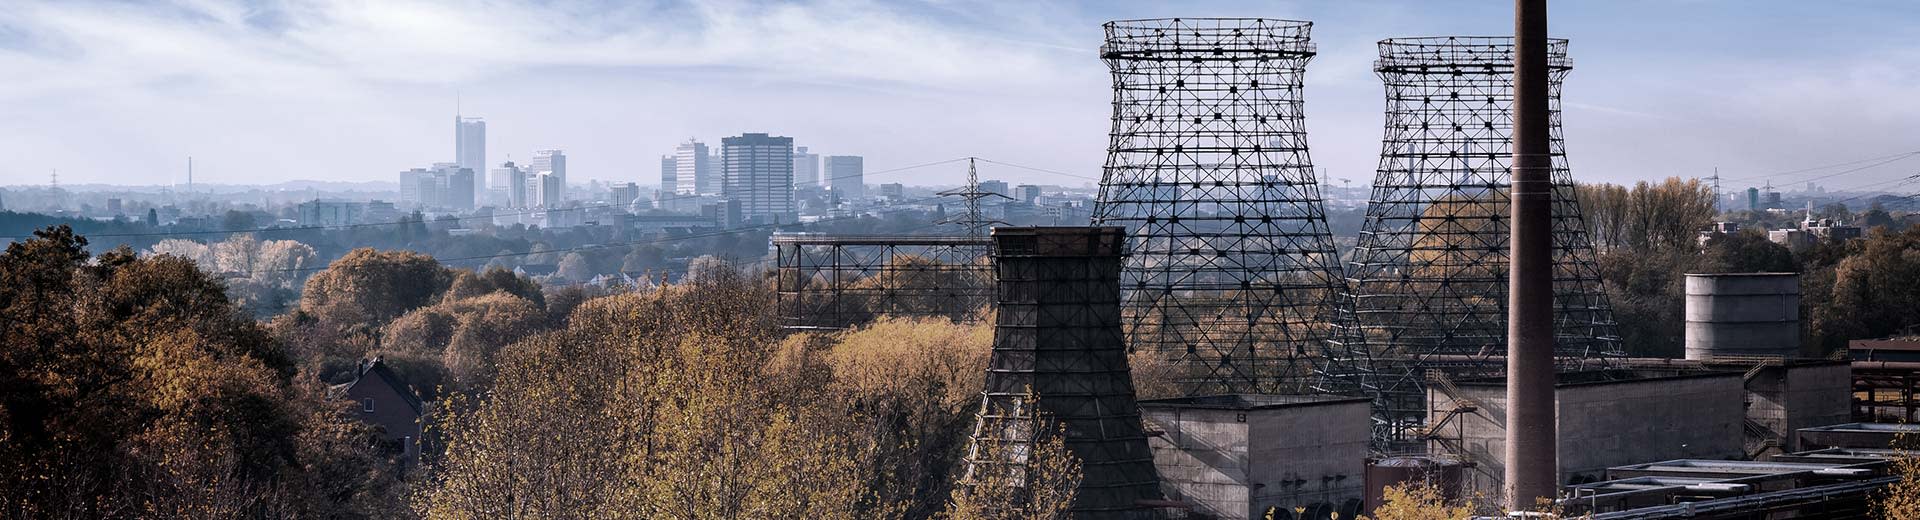 El paisaje industrial de Essen, con chimeneas de fábrica en desuso en primer plano.